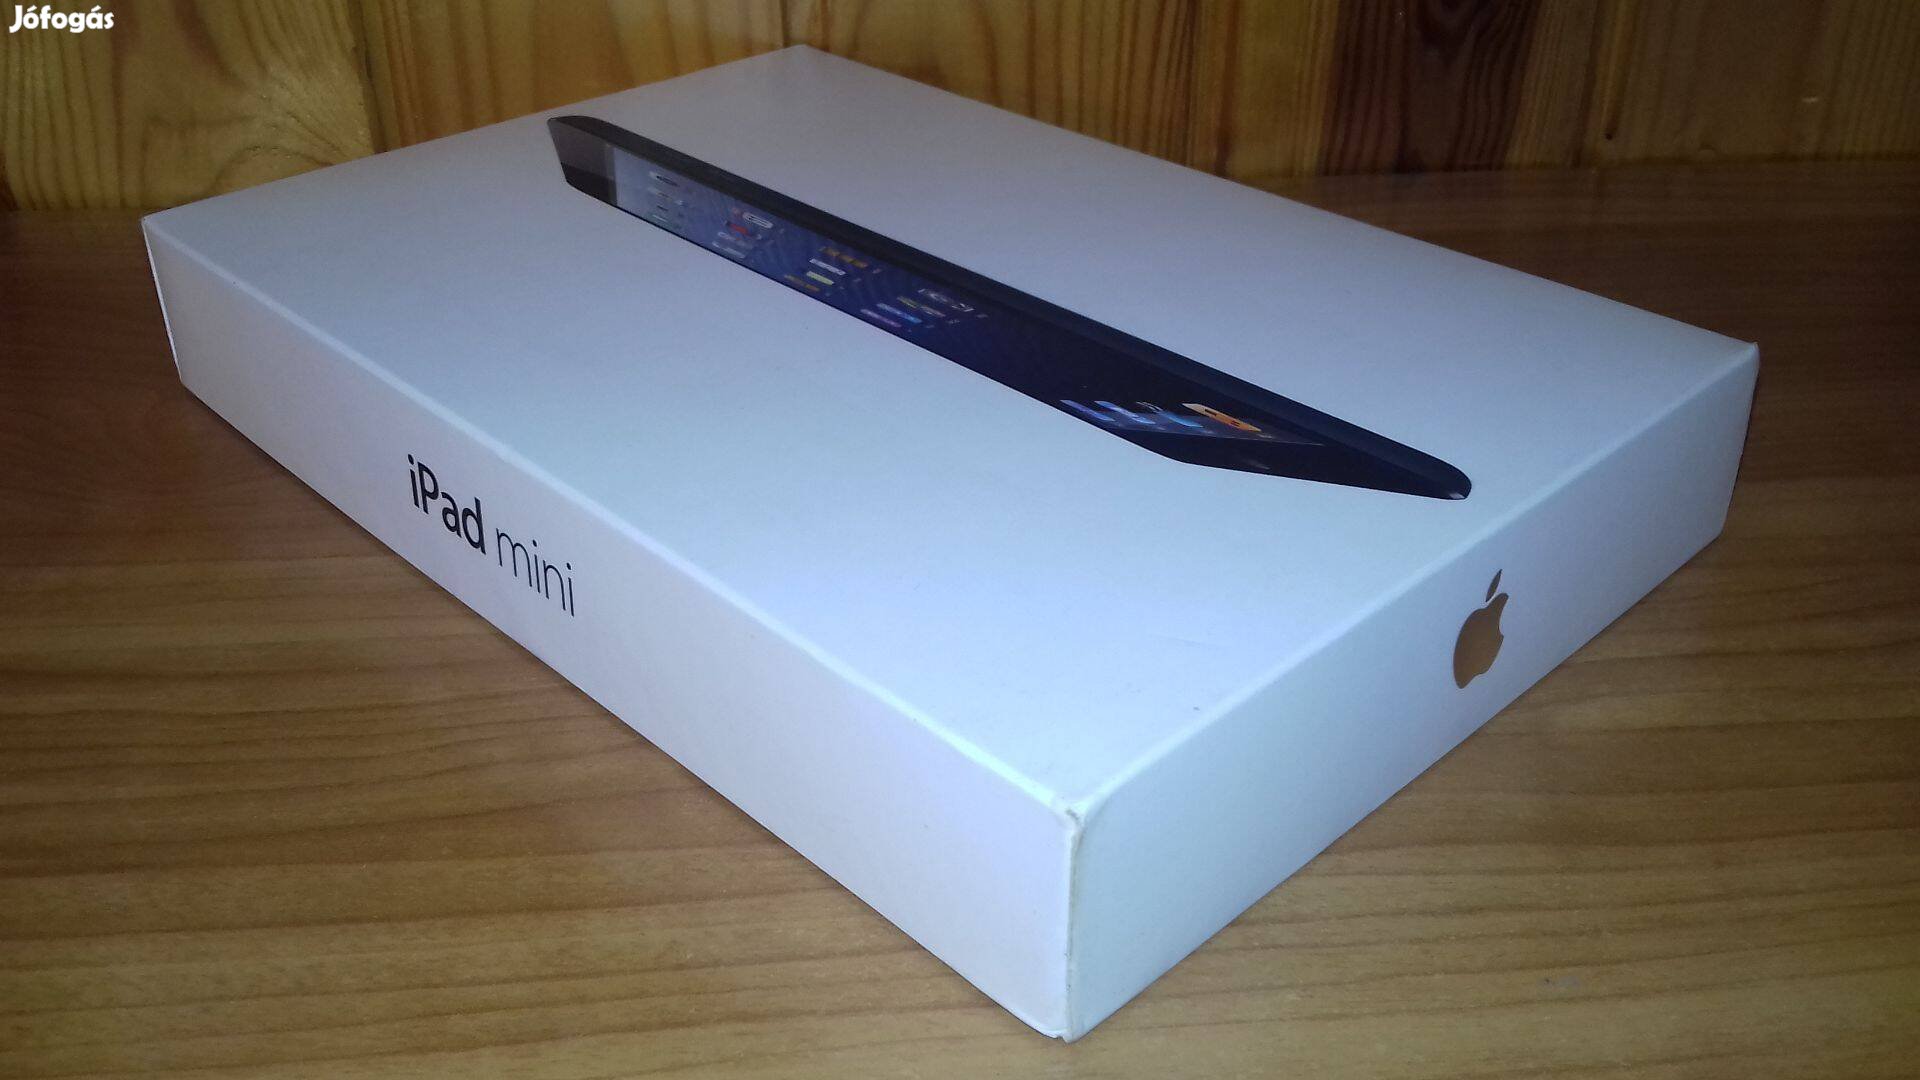 Apple doboz A1455 MD540HC/A ipad mini 16GB black 2012